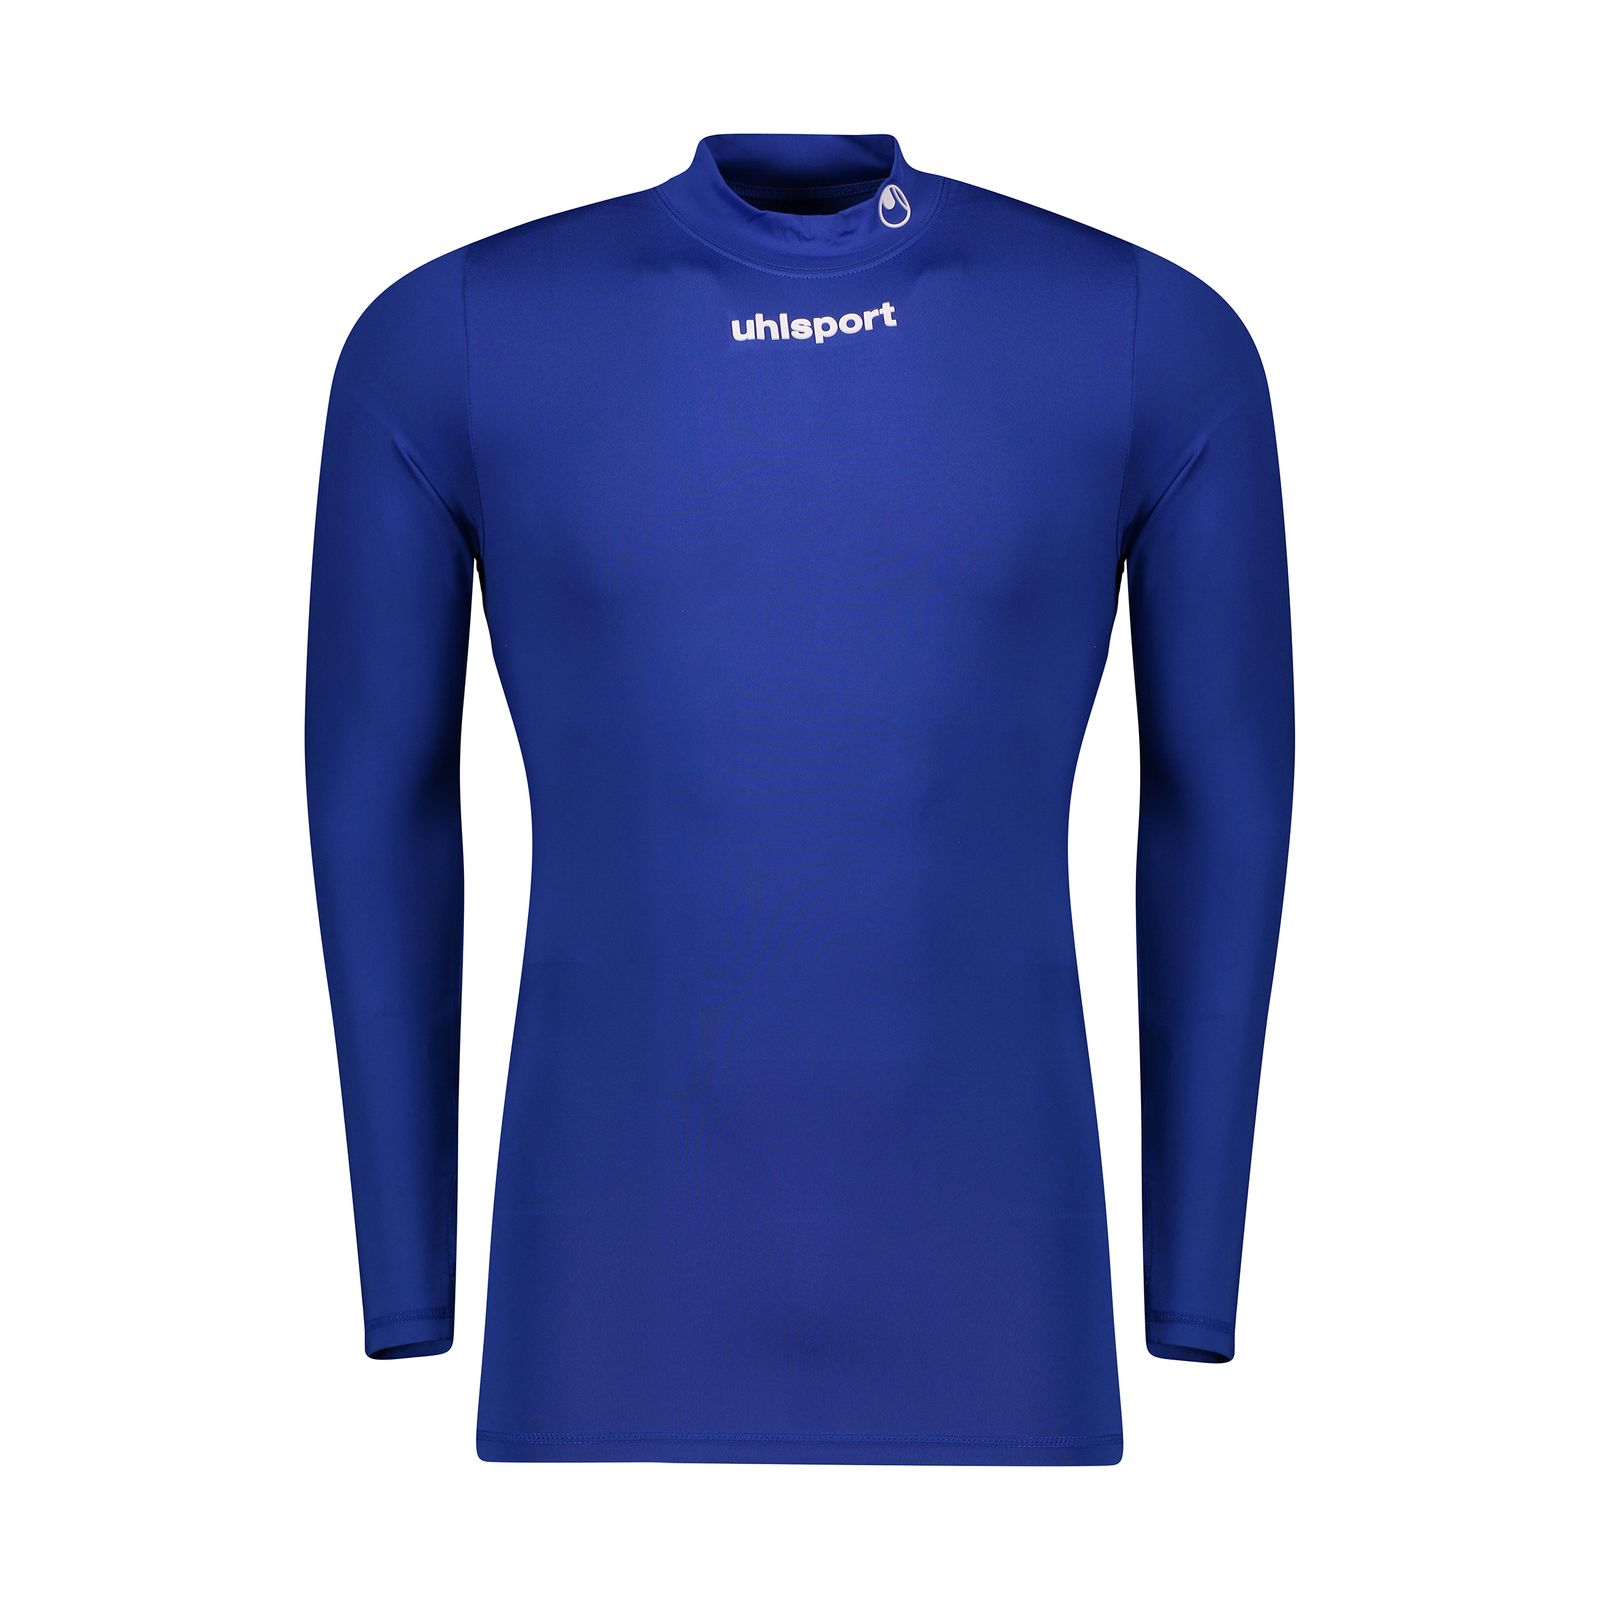 تی شرت ورزشی مردانه آلشپرت مدل MUH503-408 -  - 1